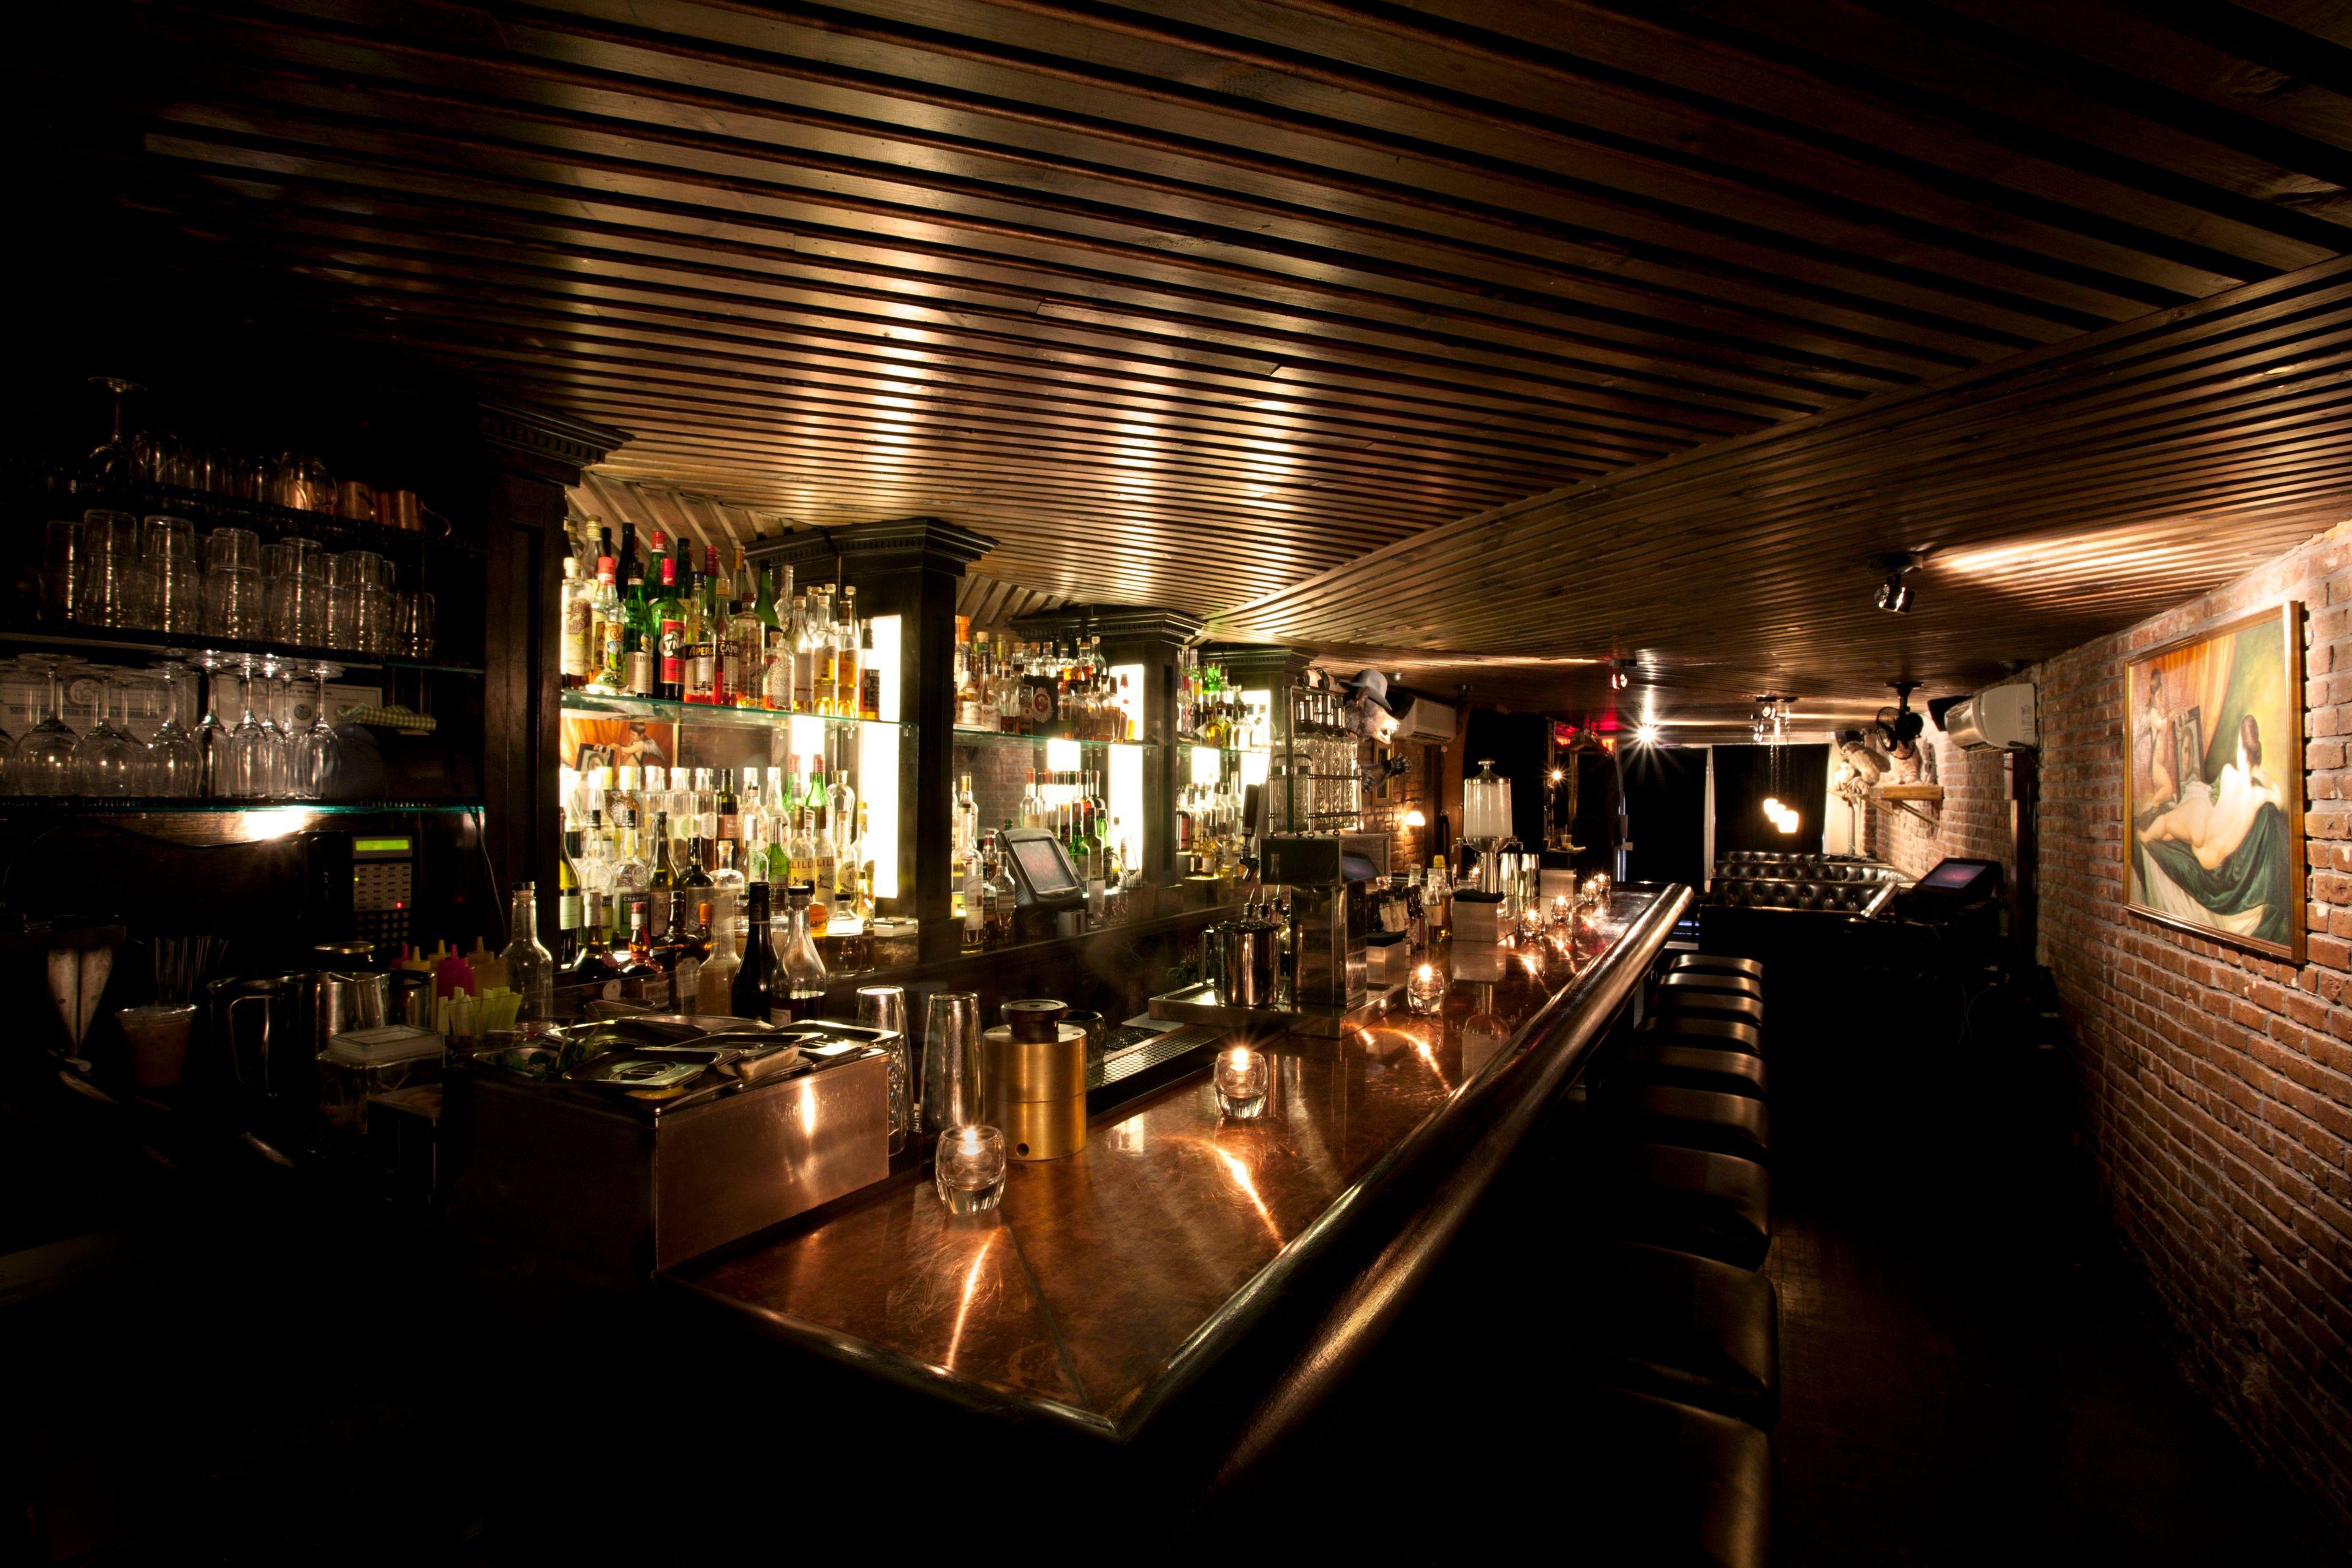 呼市纽约酒吧图片